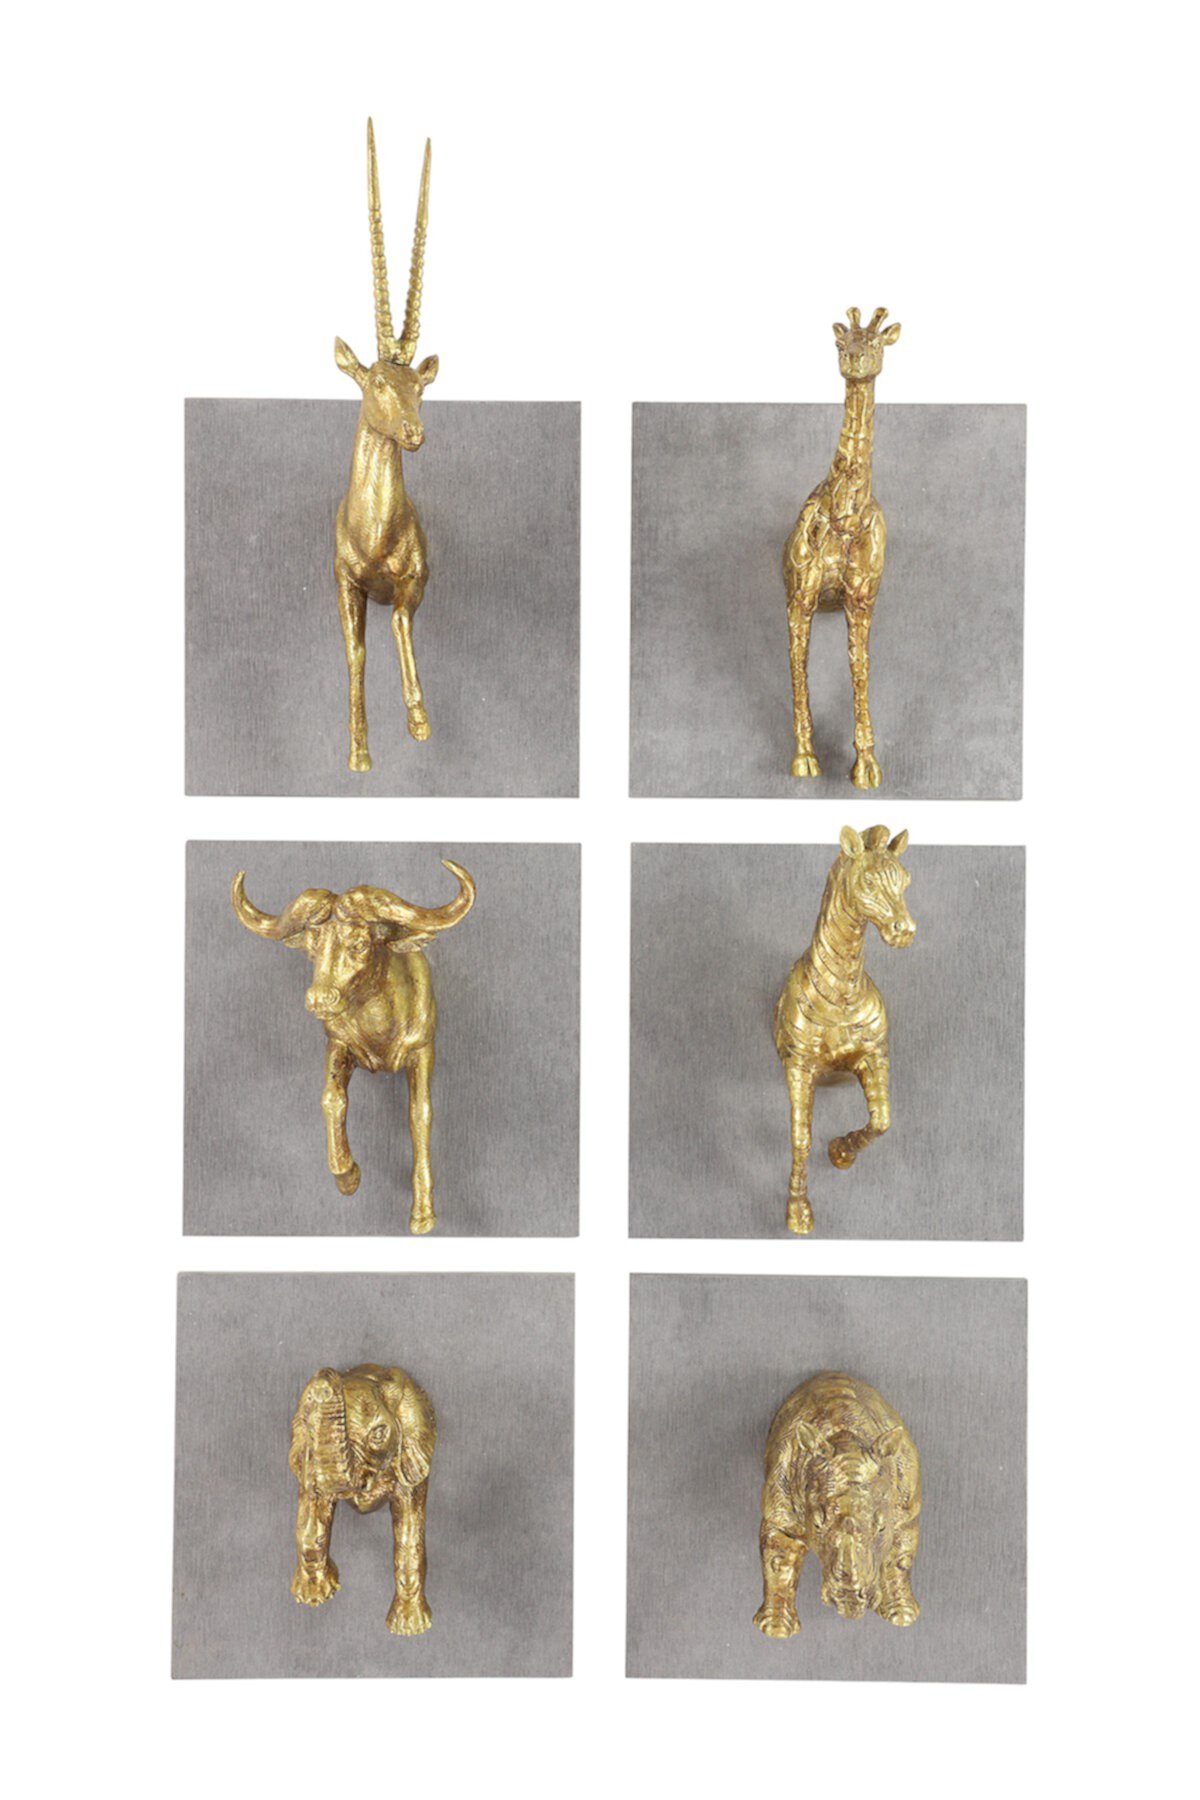 Rectangular Gold Safari Animal Sculpture Cement Wall Decor Panels - Set of 6 Willow Row